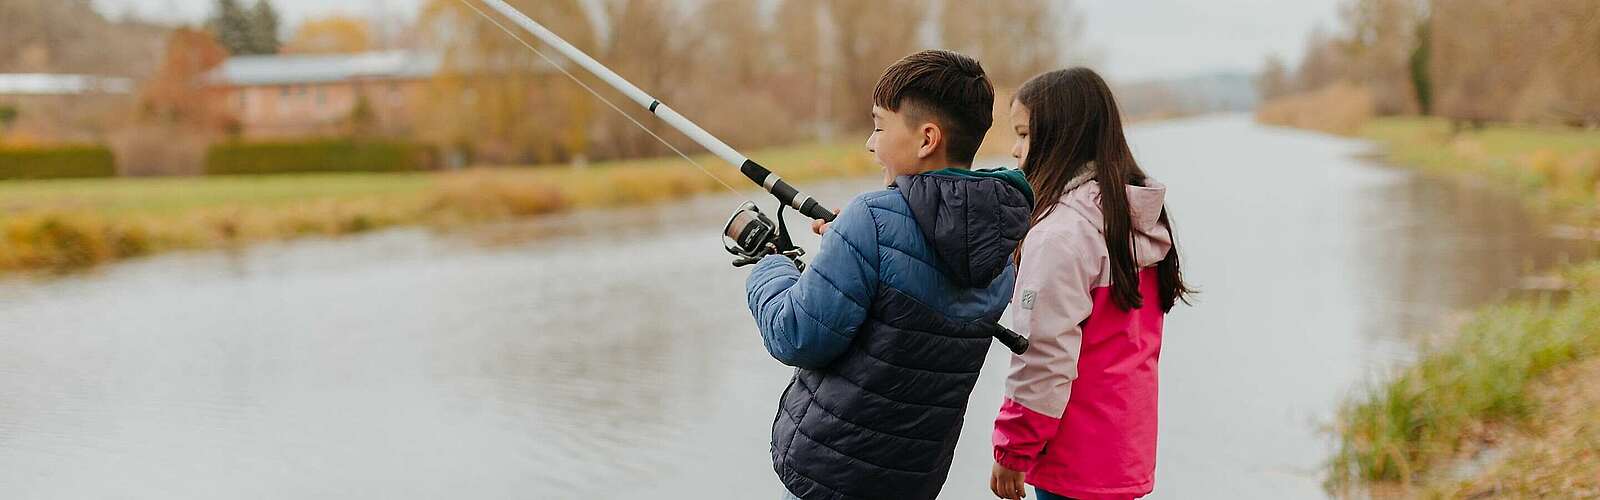 Kinder angeln am Finowkanal,
        
    

        Foto: Fotograf / Lizenz - Media Import/Julia Nimke